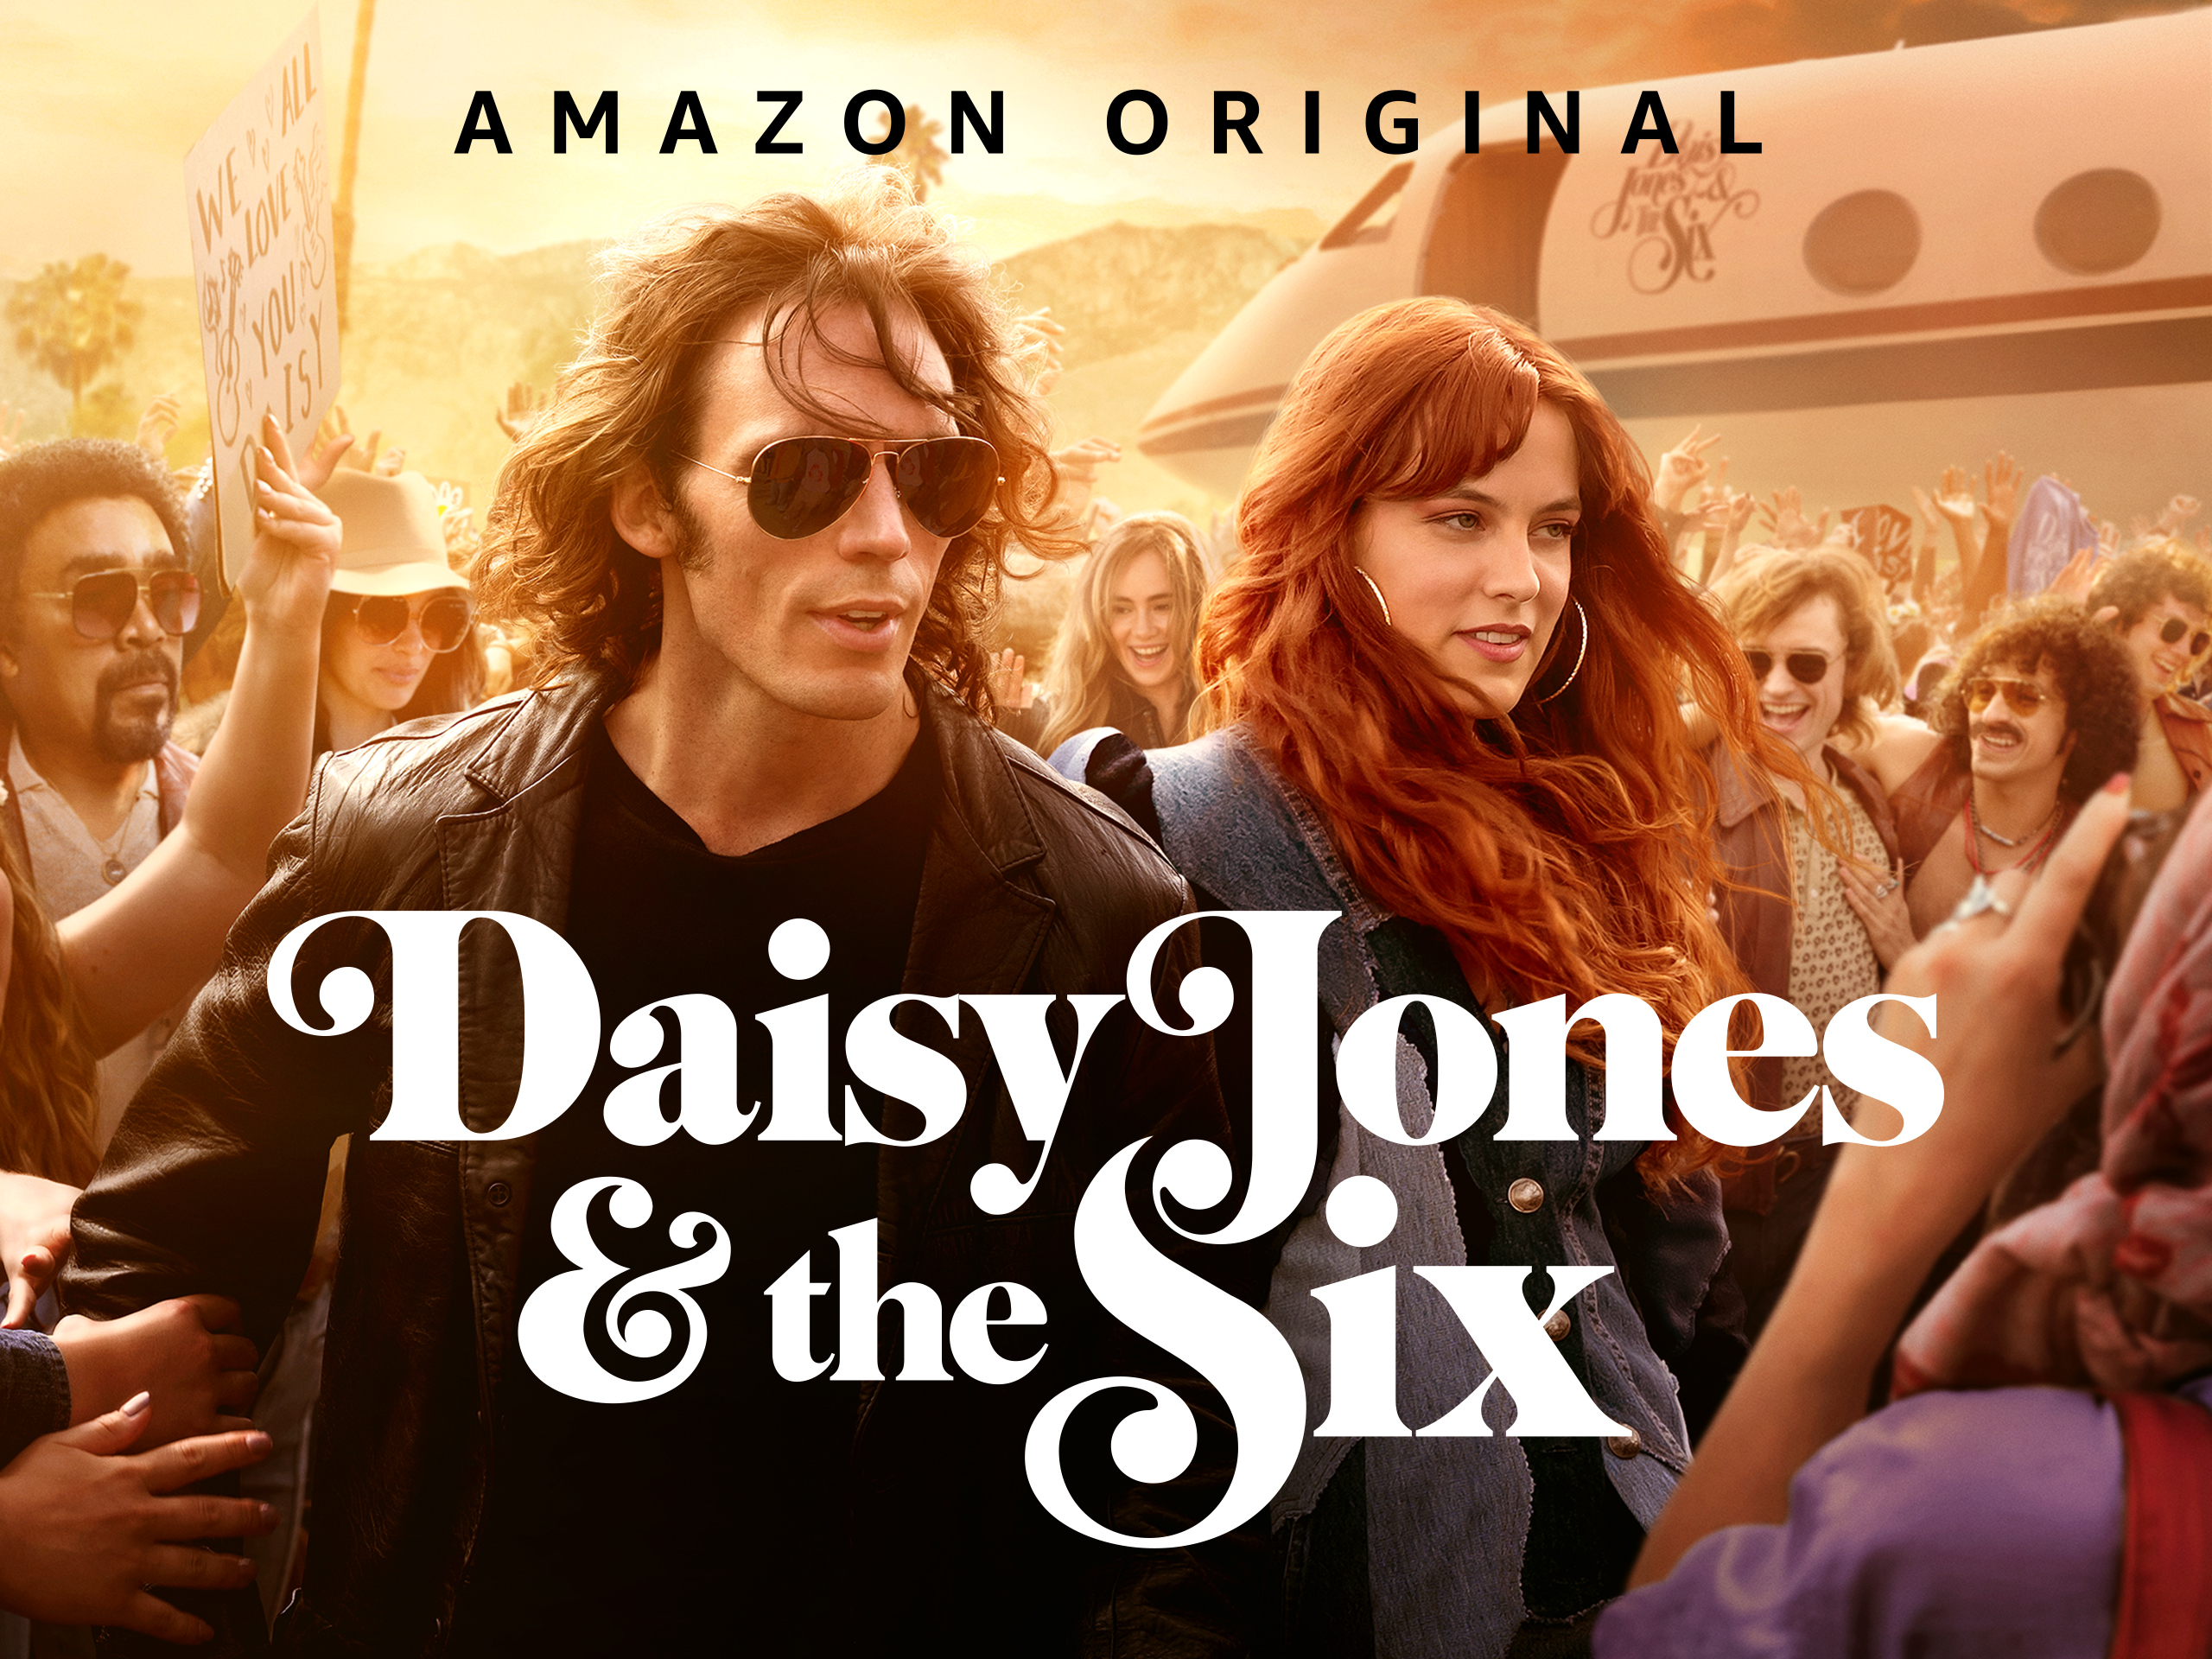 Watch Gavin Drea in ‘Daisy Jones & the Six’ on Amazon Prime Video